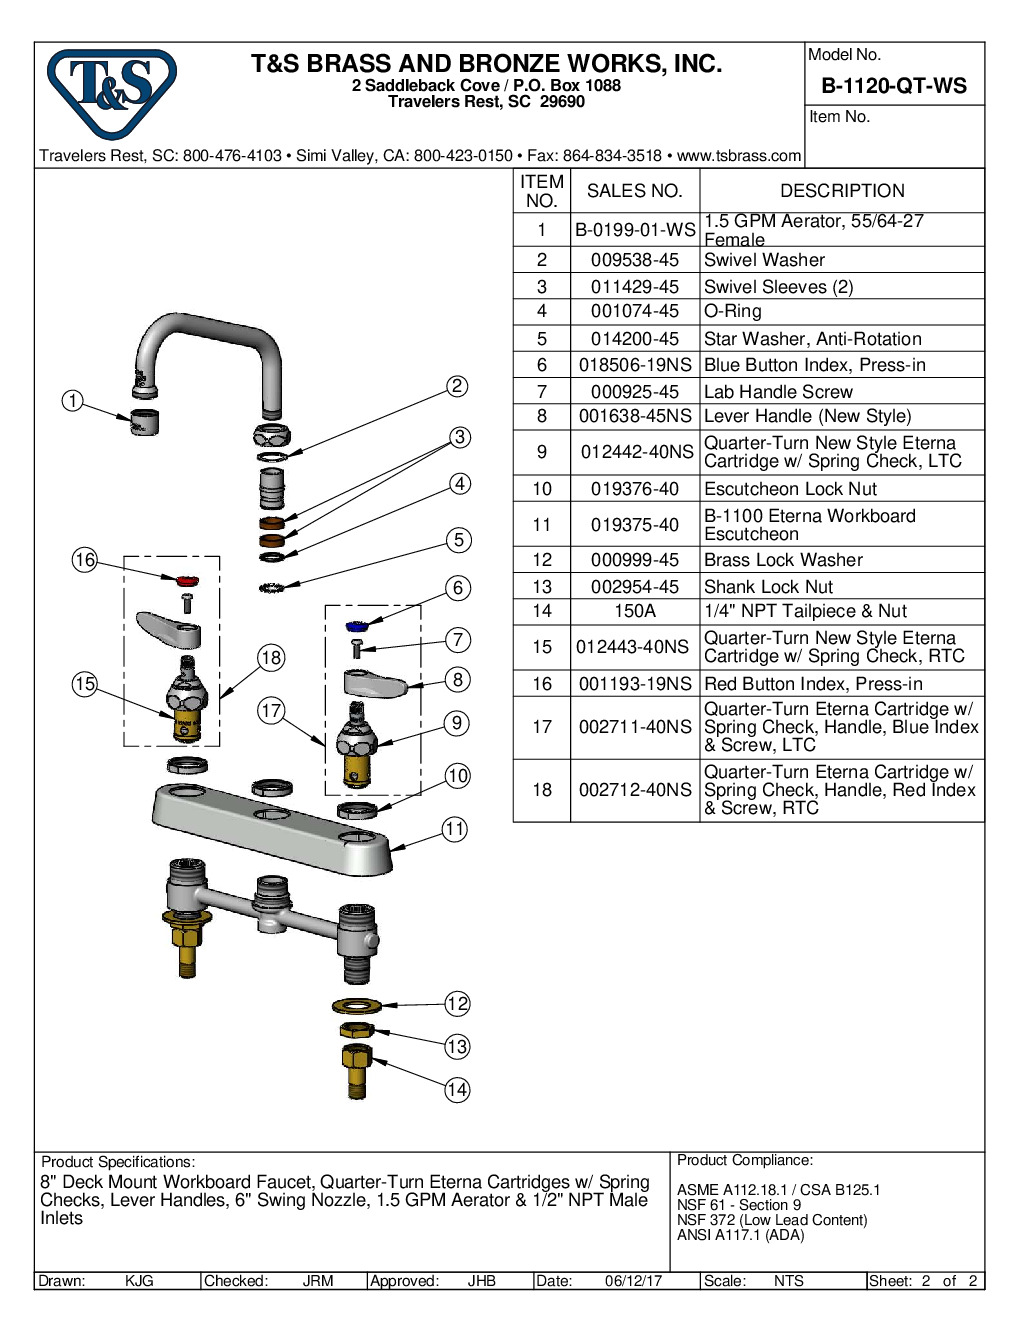 T&S Brass B-1120-QT-WS Deck Mount Faucet